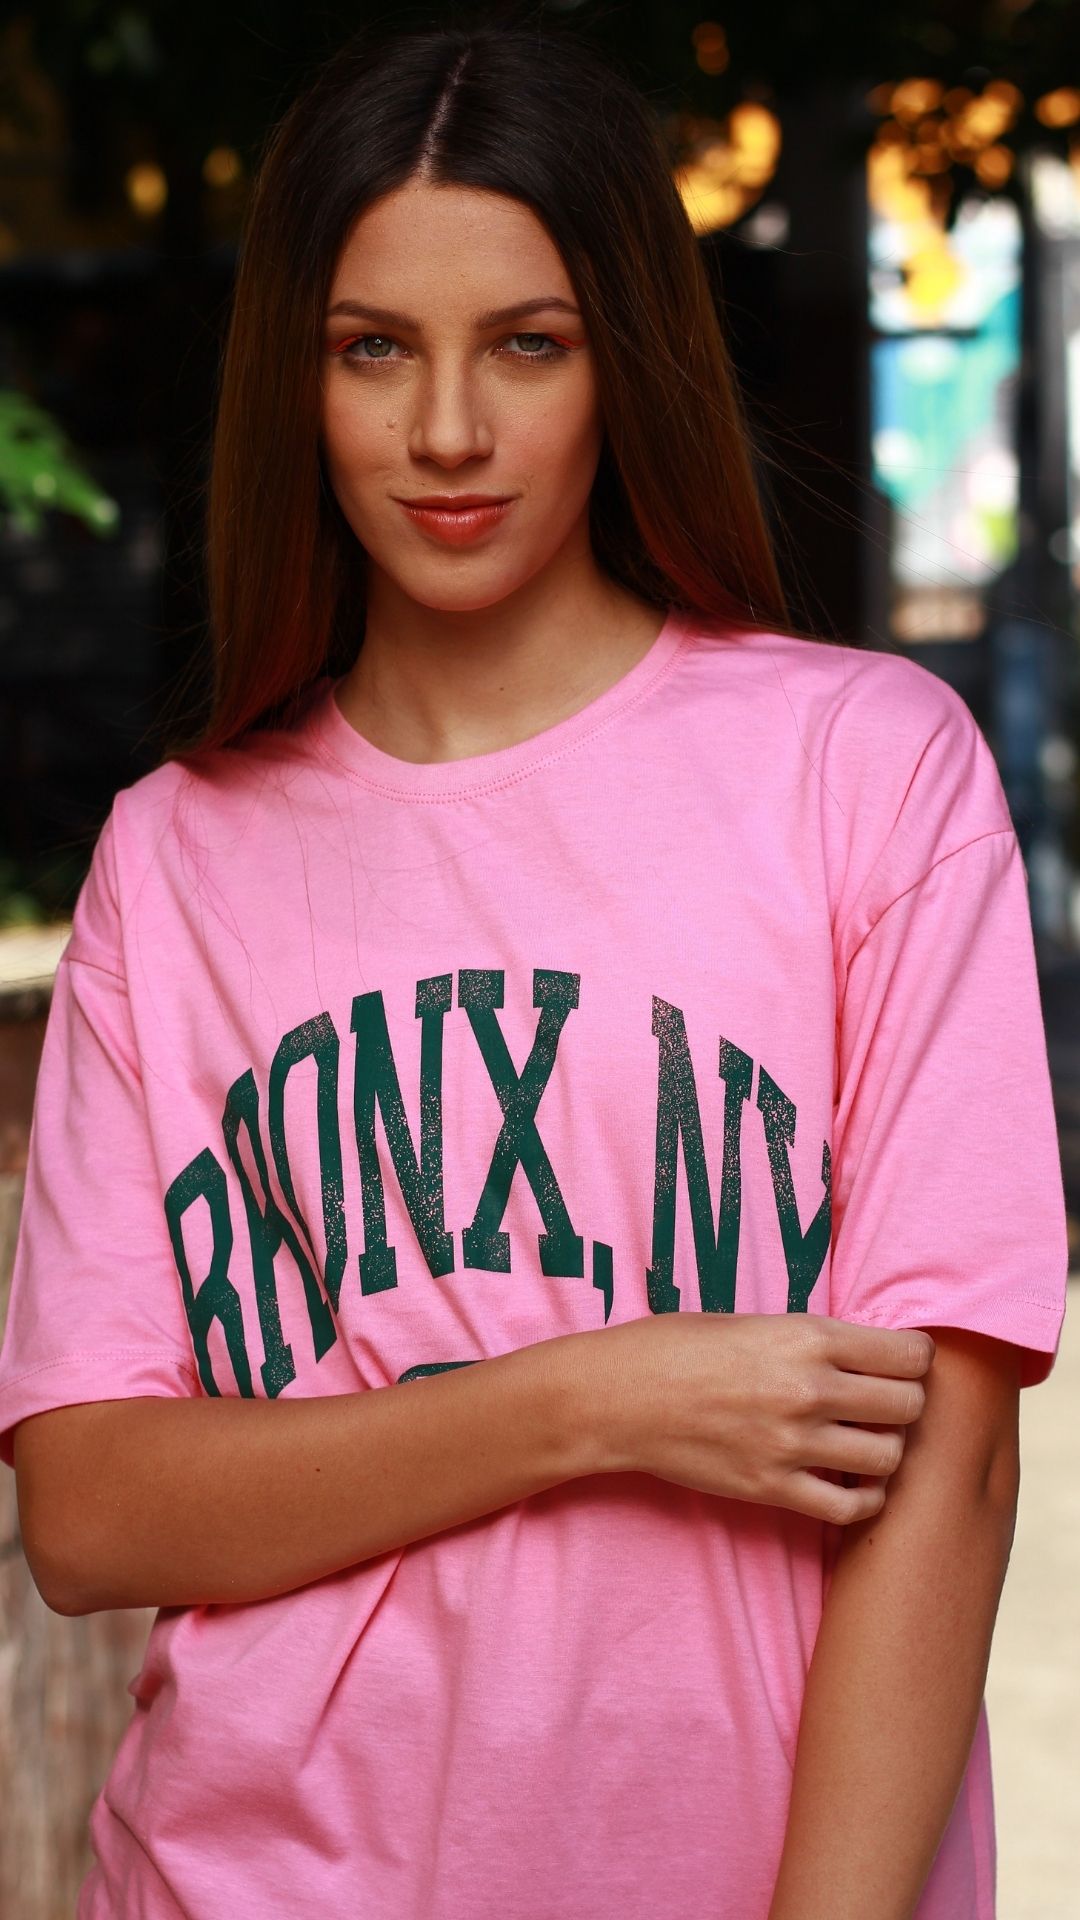 T-Shirt Camisetão Bronx  - Metro & Co.